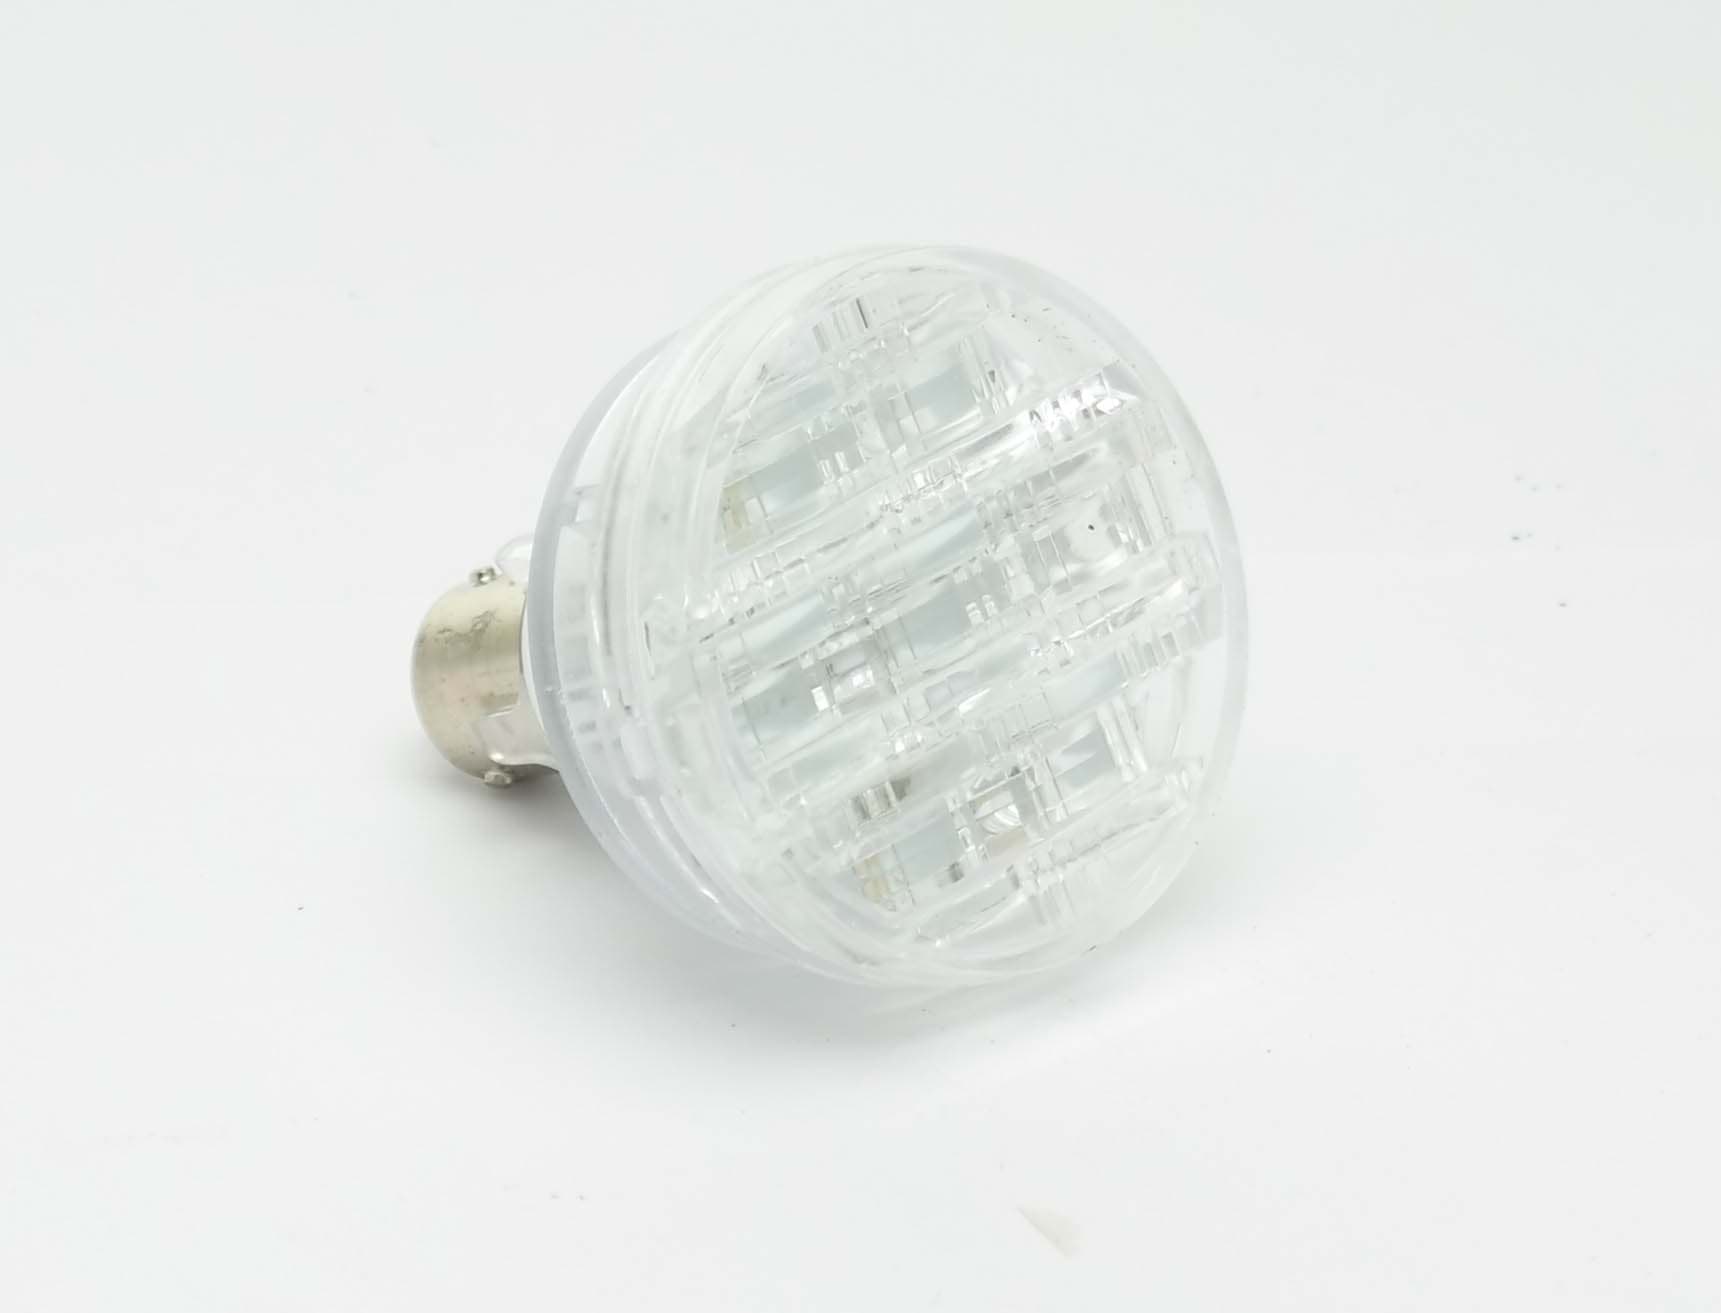 Imagen de LED Blinklampe für Europoint II orig Aspöck  12-1560-011 mit Zulassung